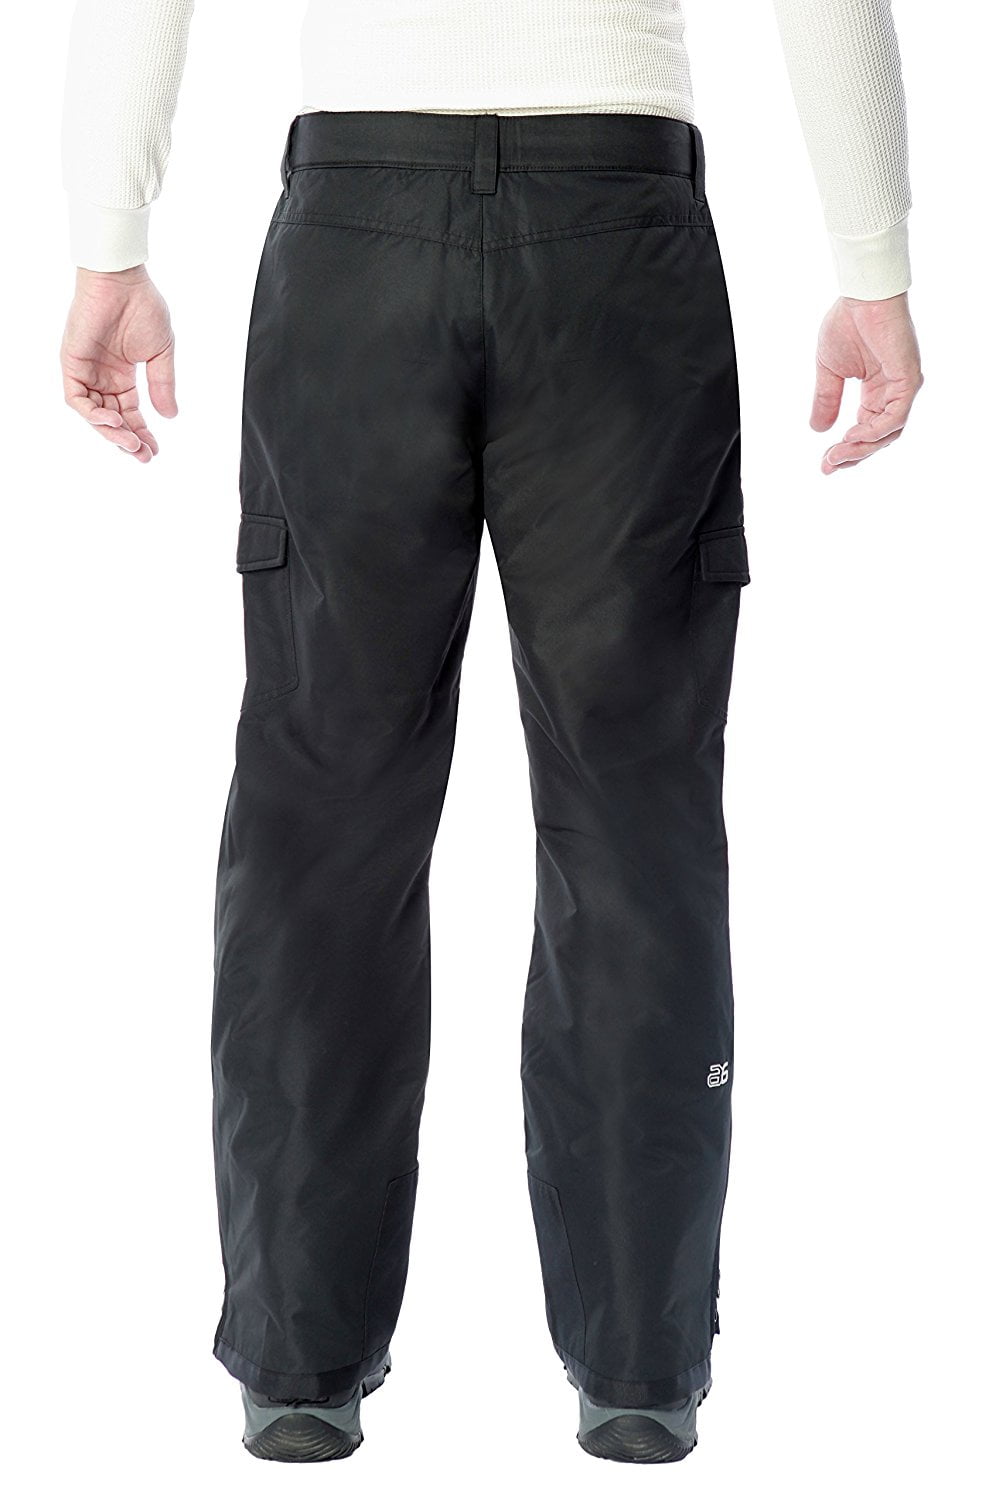 シルバー金具 Arctix Men's Snow Sports Cargo Pants, Charcoal, X-Large/28